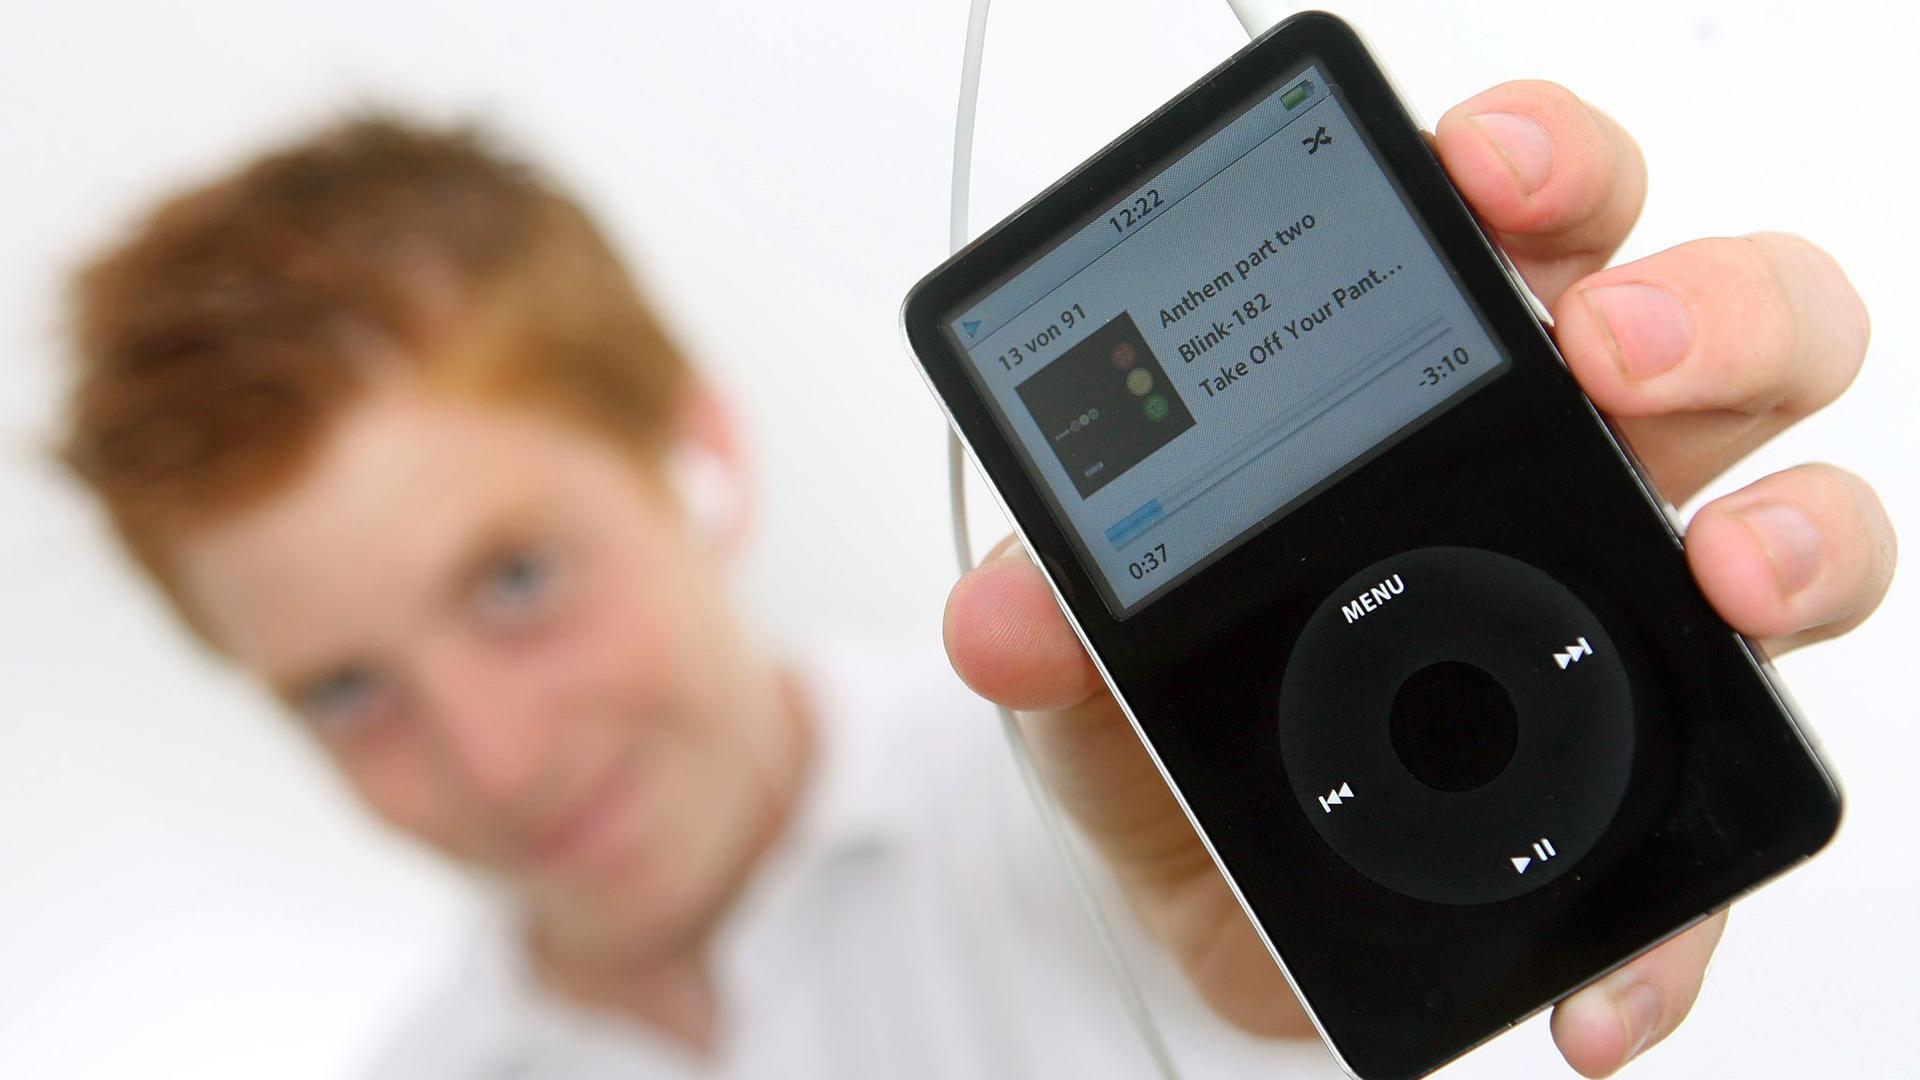 Apples iPod-Player sind nach mehr als 20 Jahren Geschichte.